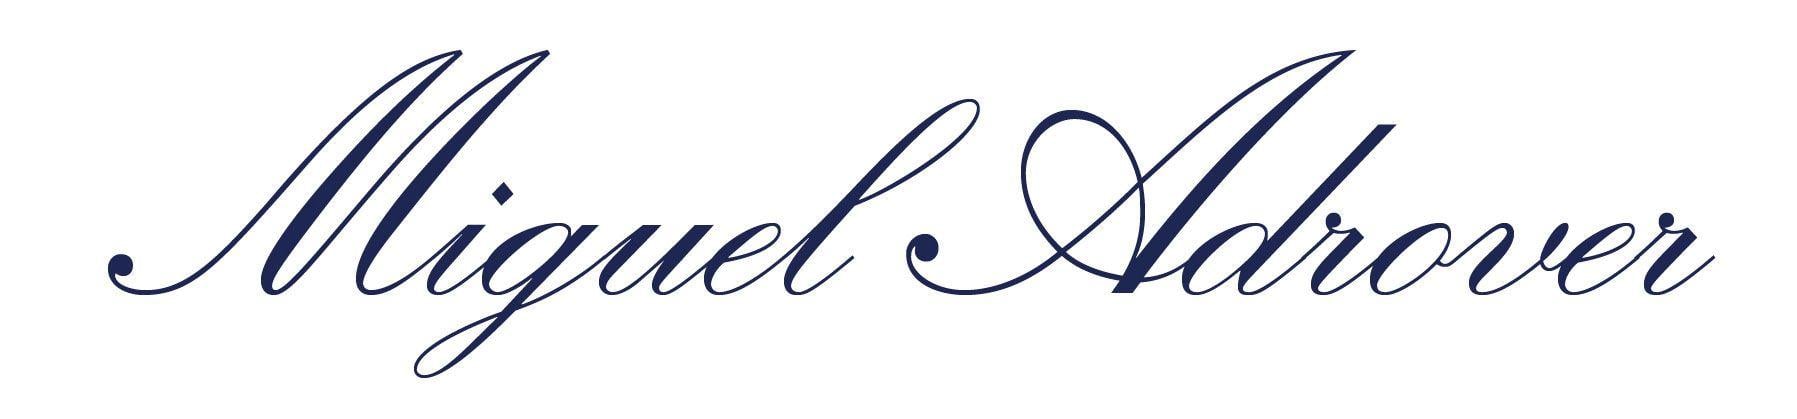 Miguel Logo - Miguel adrover